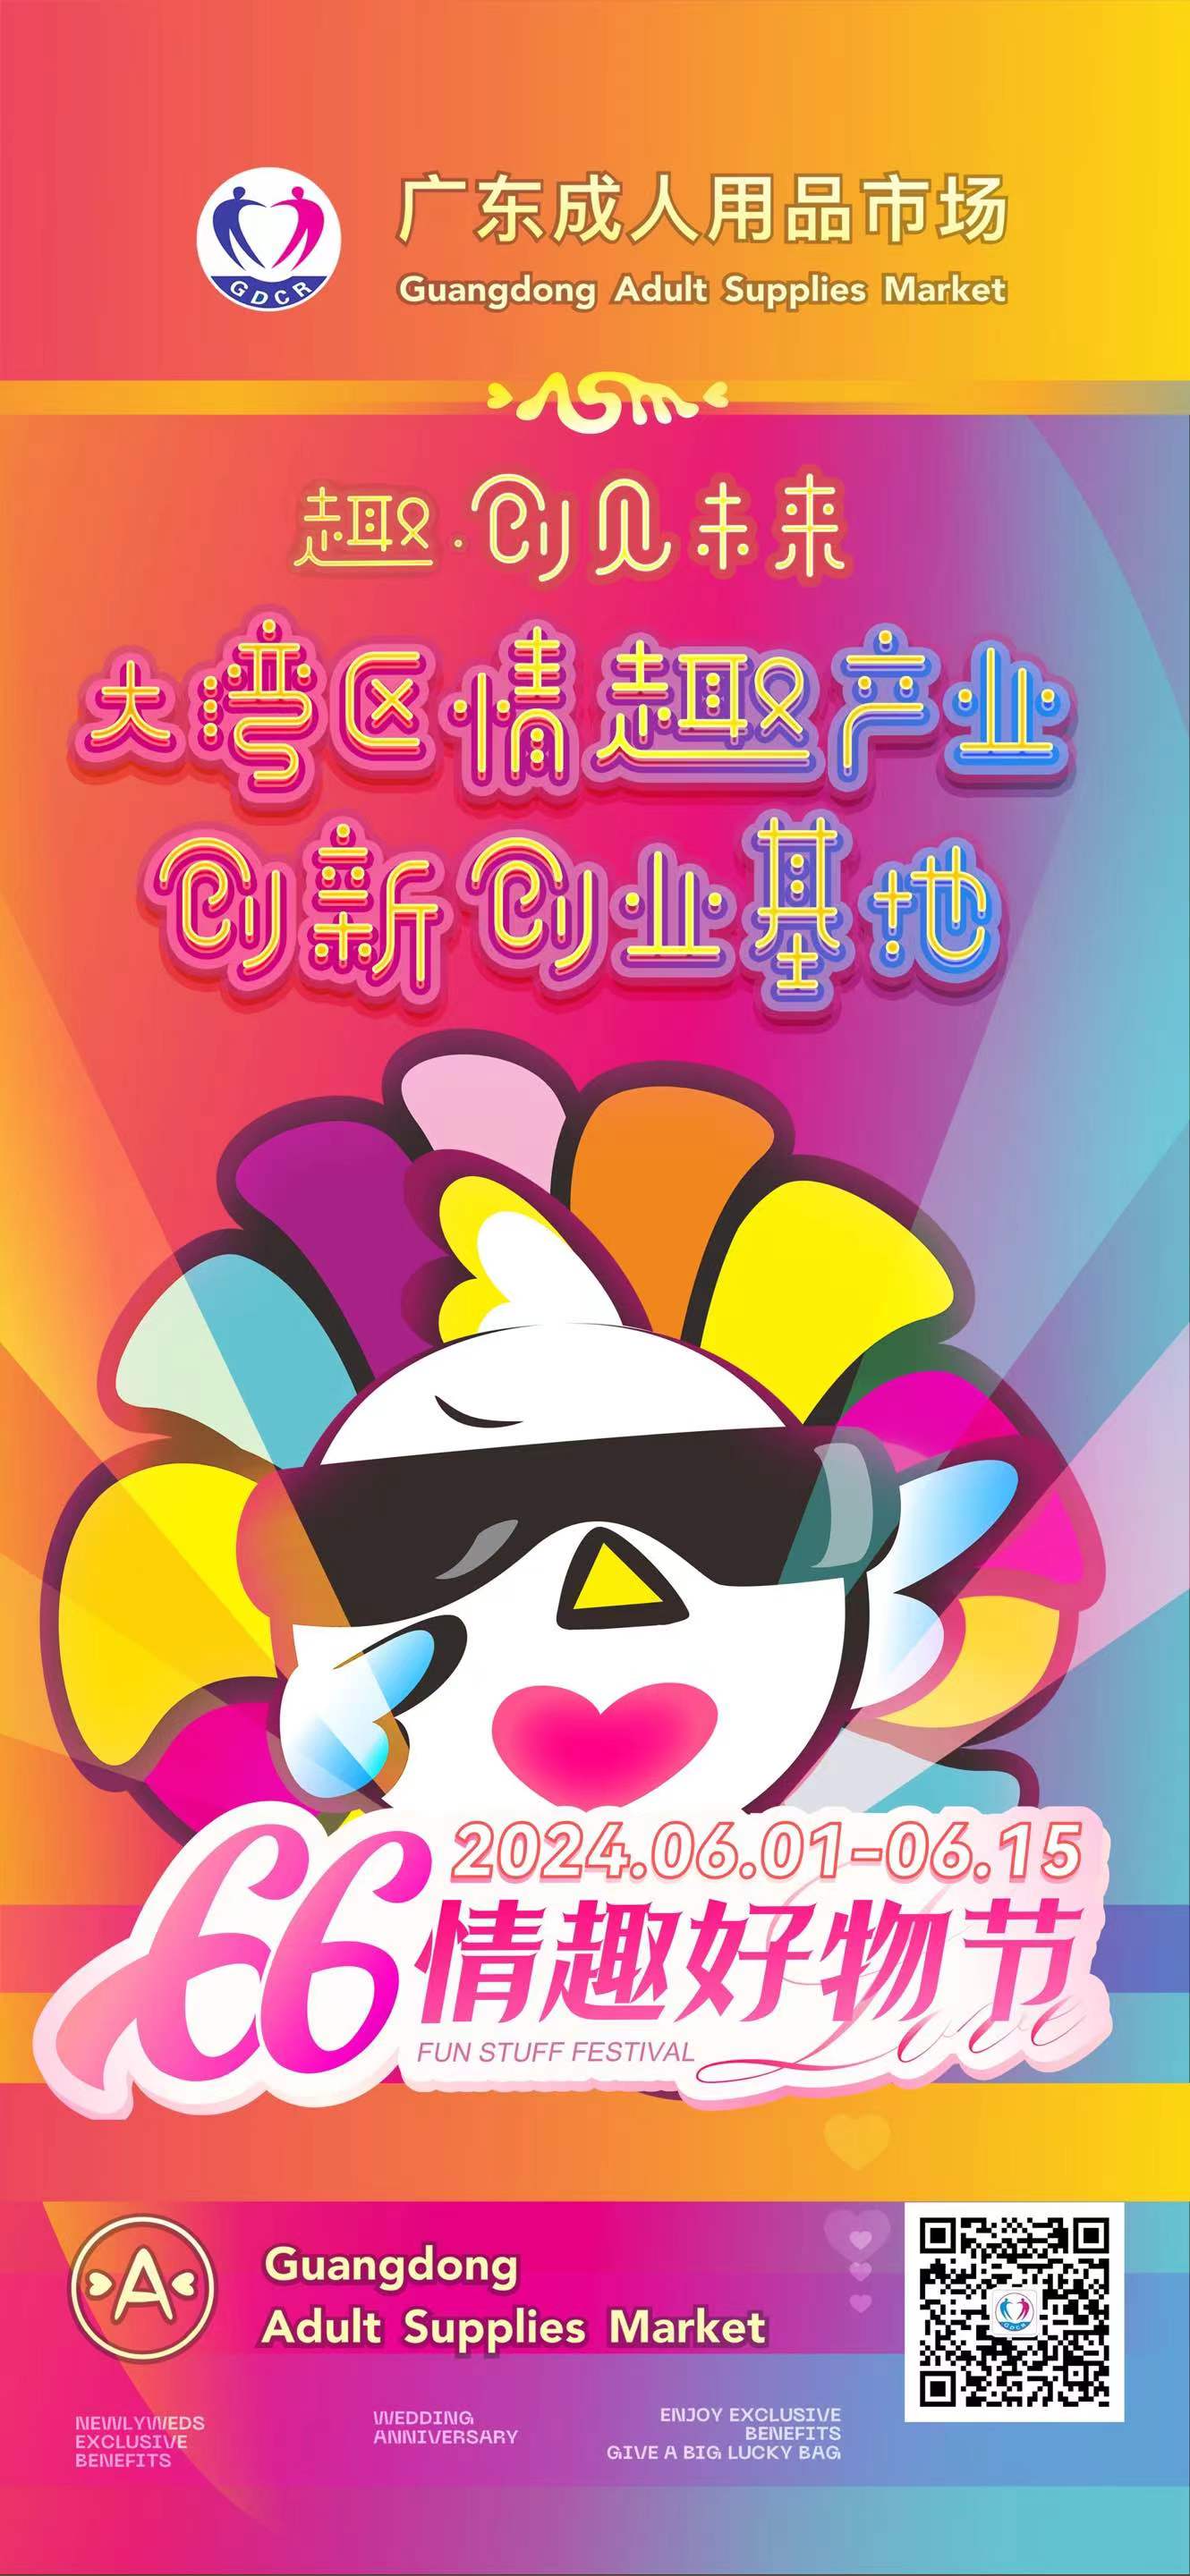 广东成人用品市场第五届“66情趣好物节”欢乐启幕(图3)